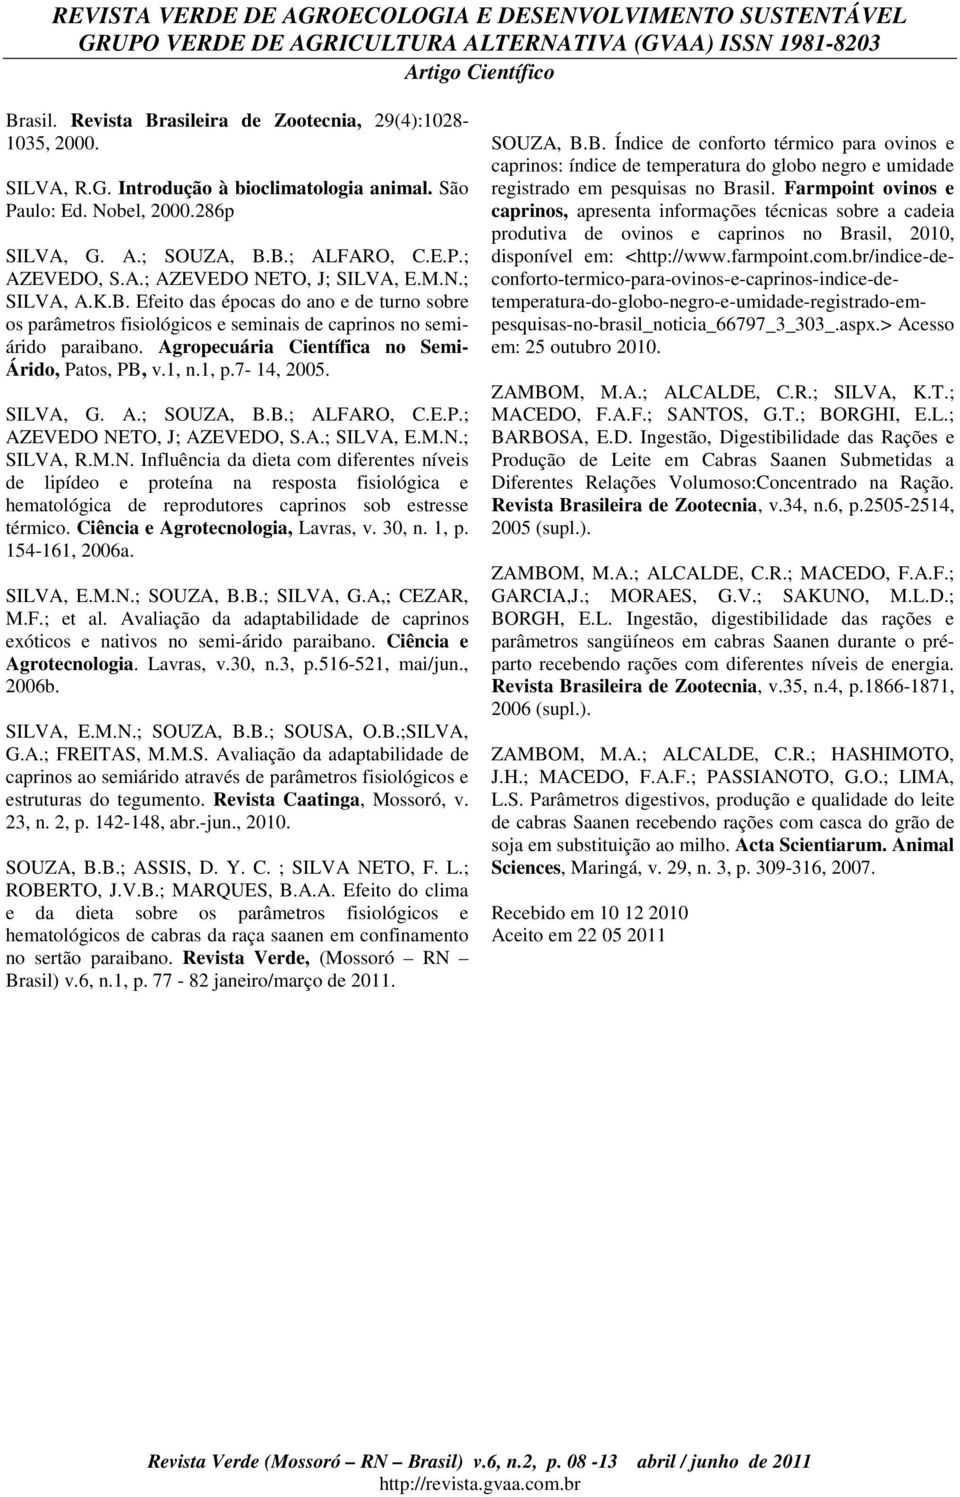 Agropecuária Científica no Semi- Árido, Patos, PB, v.1, n.1, p.7-14, 2005. SILVA, G. A.; SOUZA, B.B.; ALFARO, C.E.P.; AZEVEDO NE